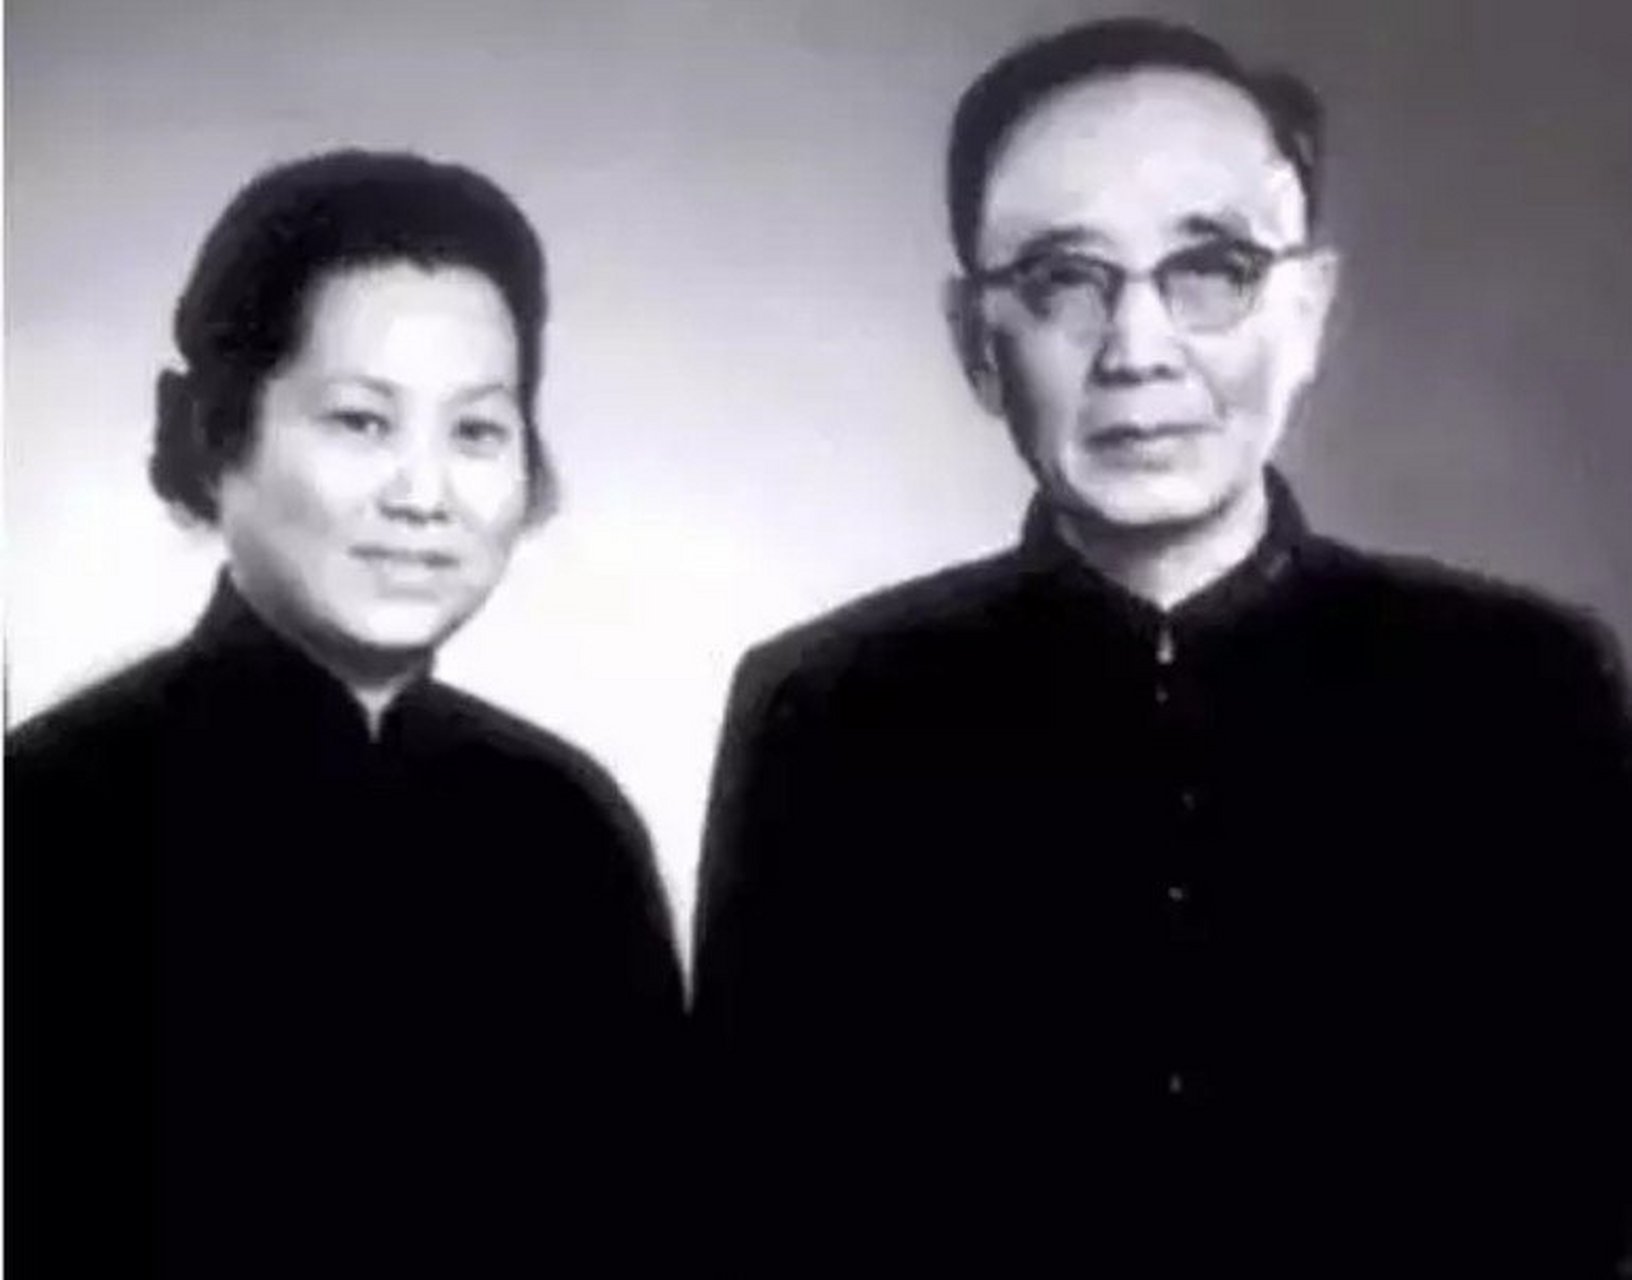 Zhang Qionghua and Guo Moruo 张琼华和郭沫若